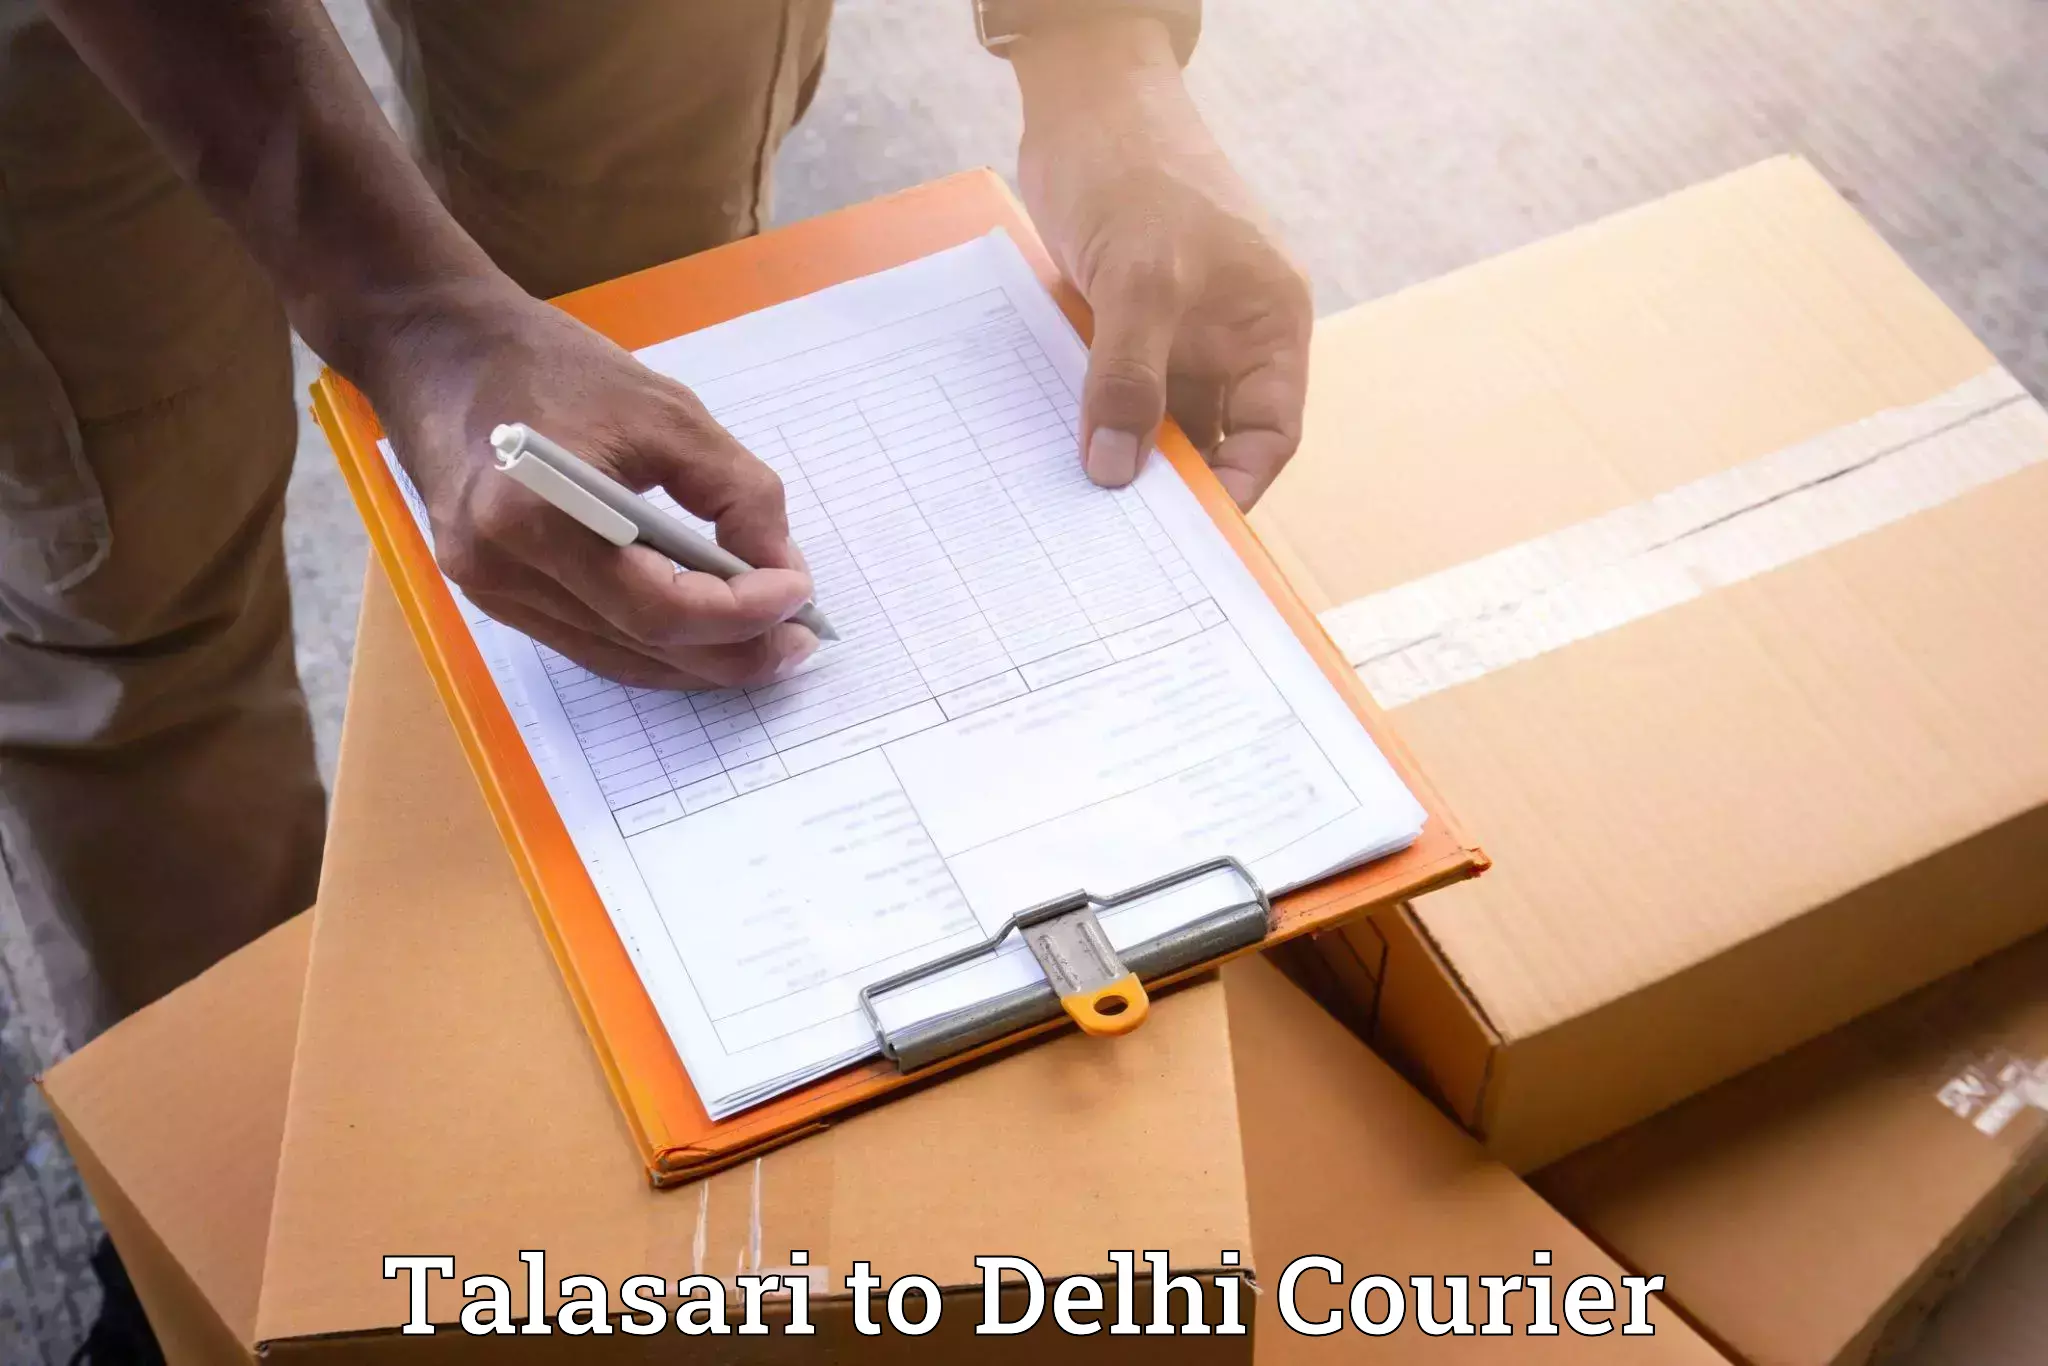 Tailored moving services Talasari to Sarojini Nagar